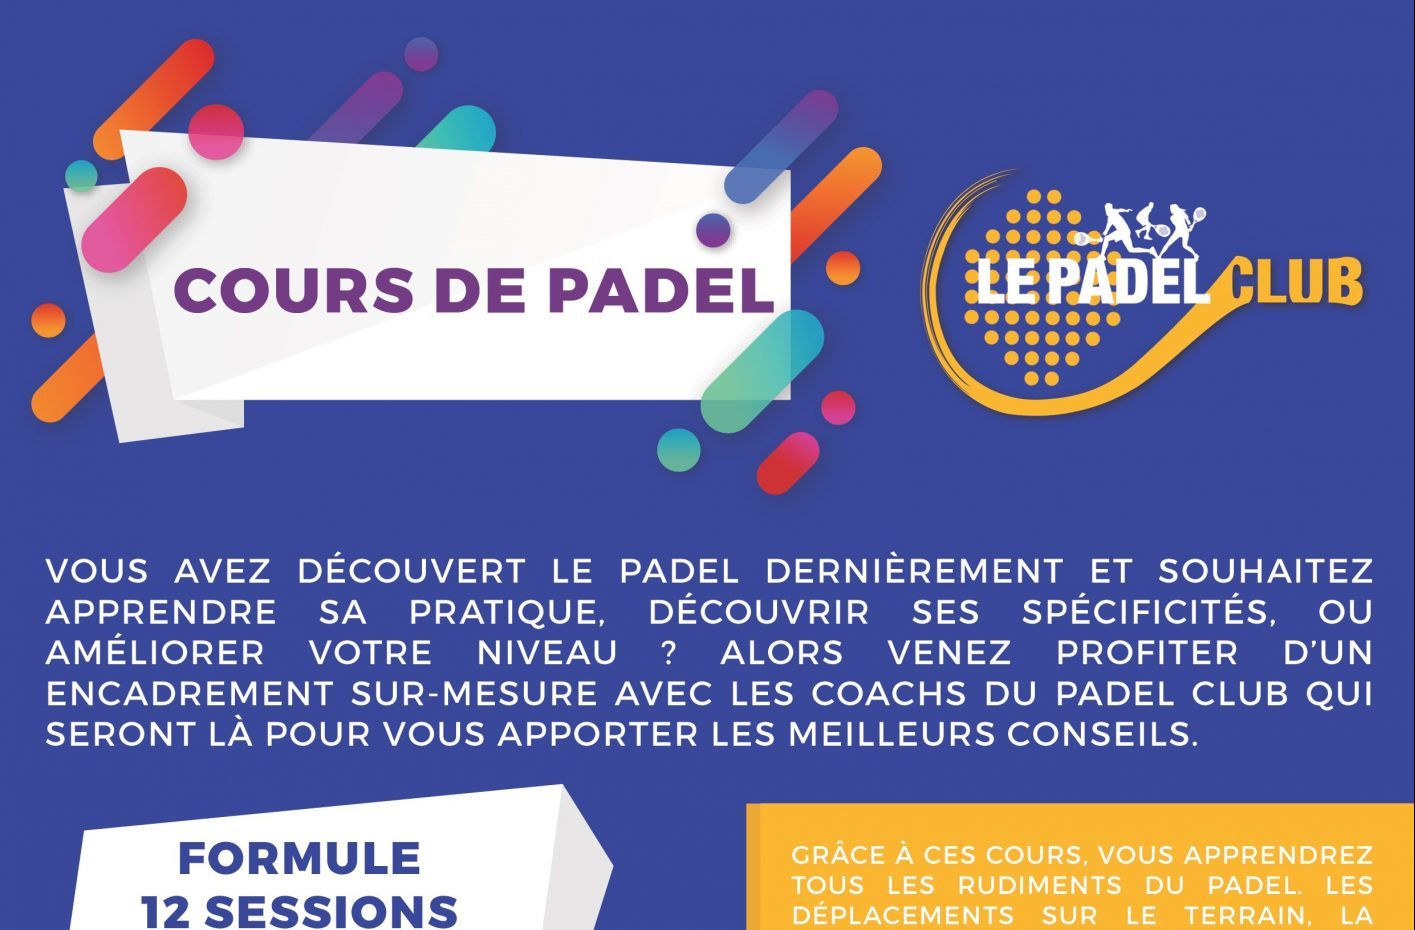 Courses of padel in Paris - The Padel Club